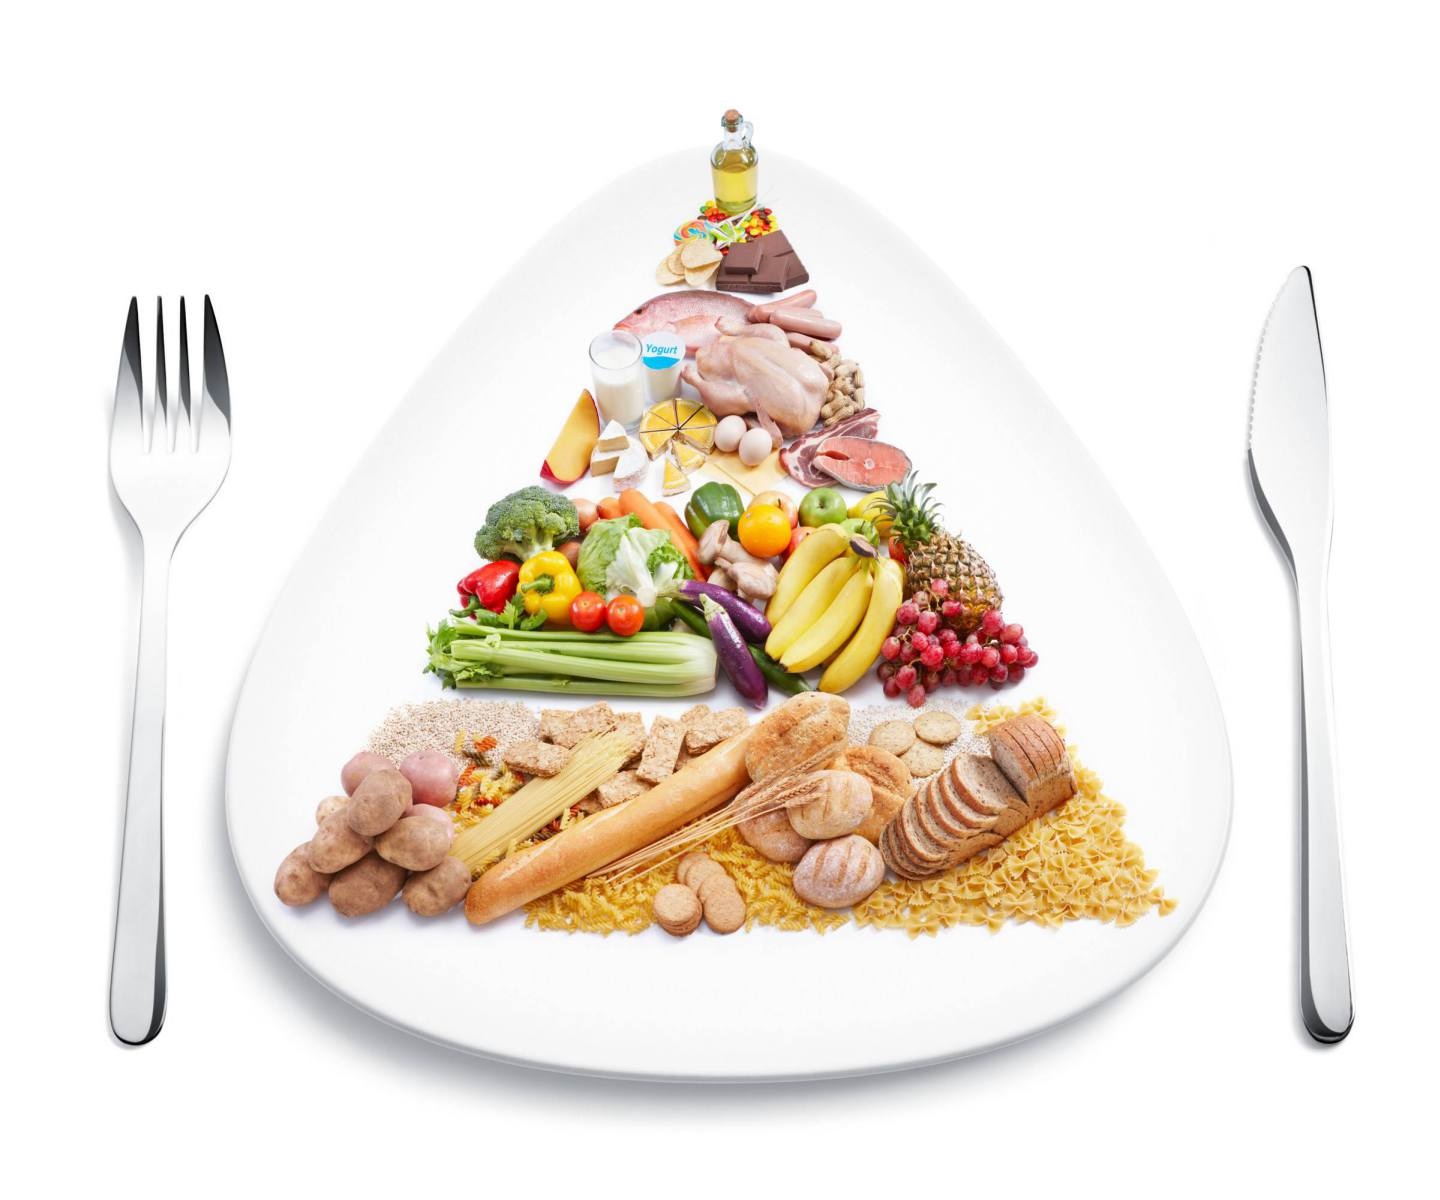 Chế độ dinh dưỡng là yếu tố quan trọng với quá trình tăng chiều cao